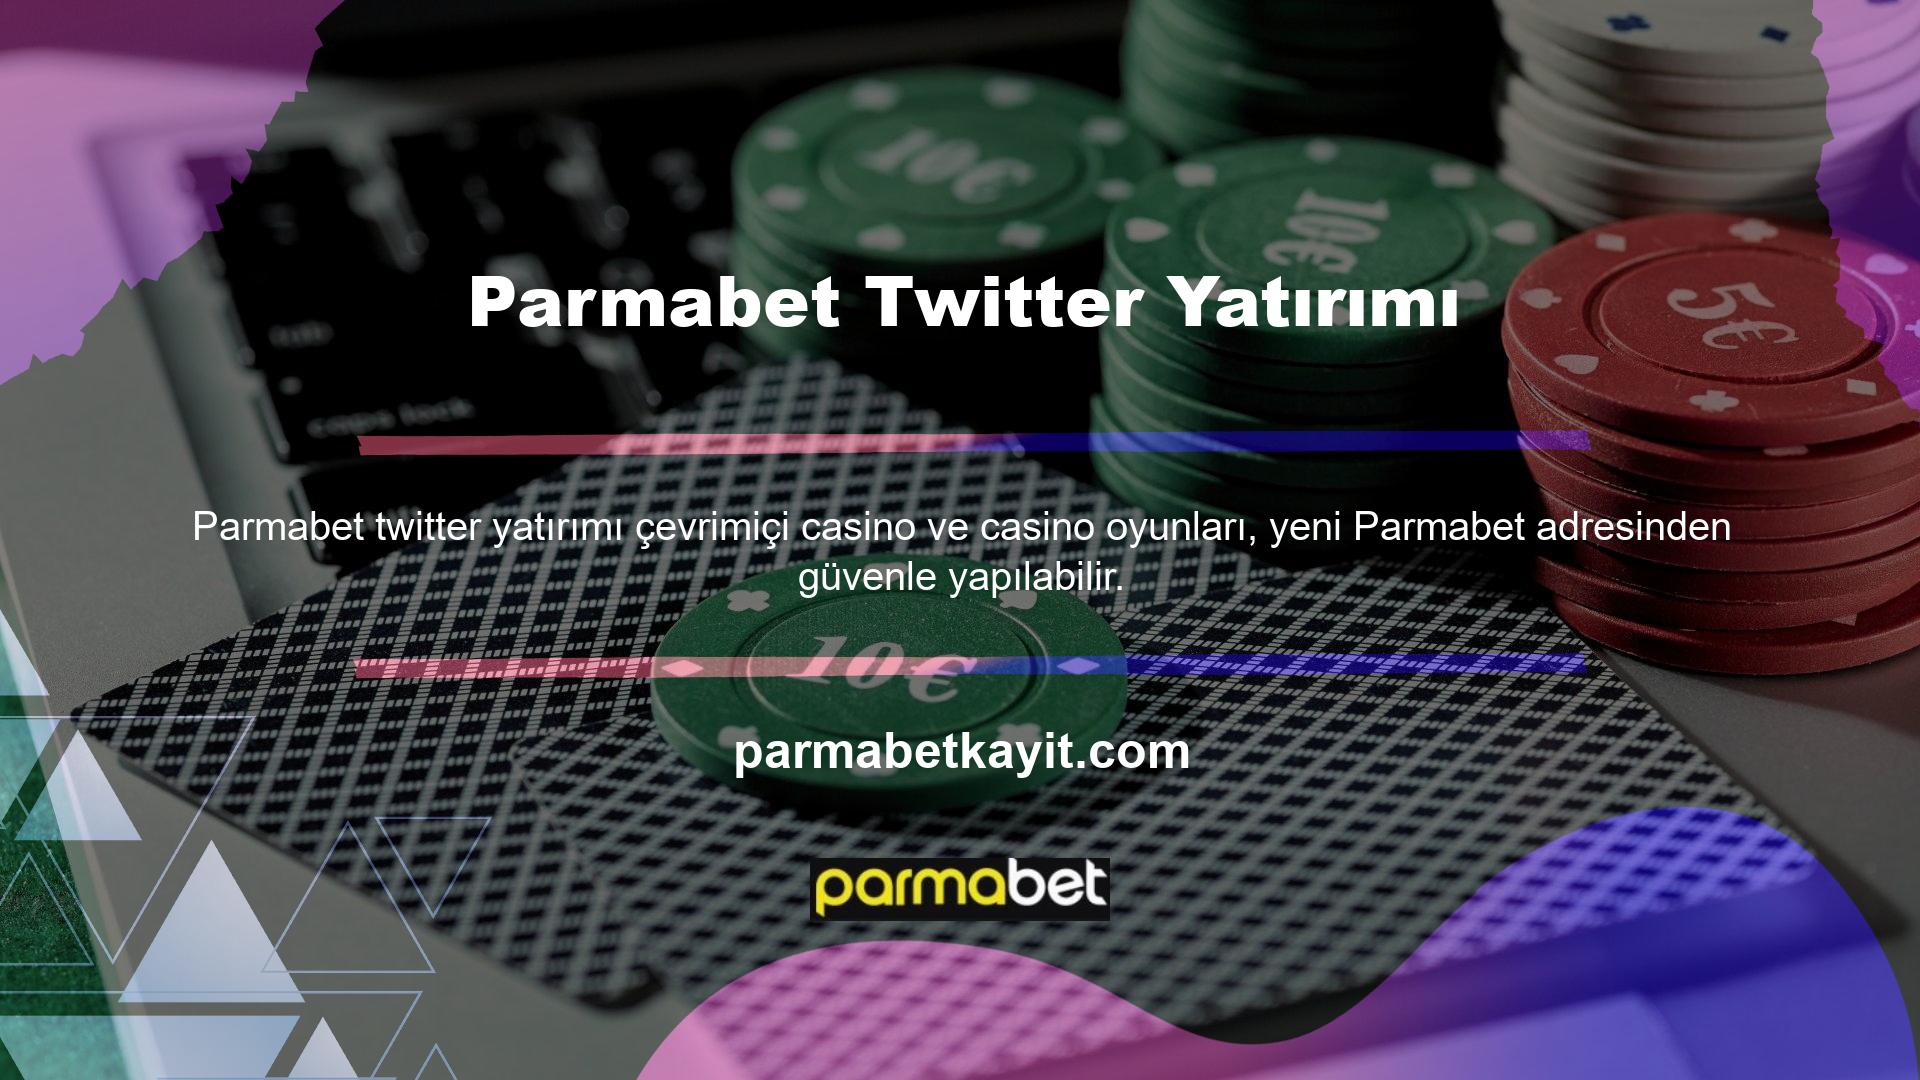 Türkiye'nin lider online bahis platformu